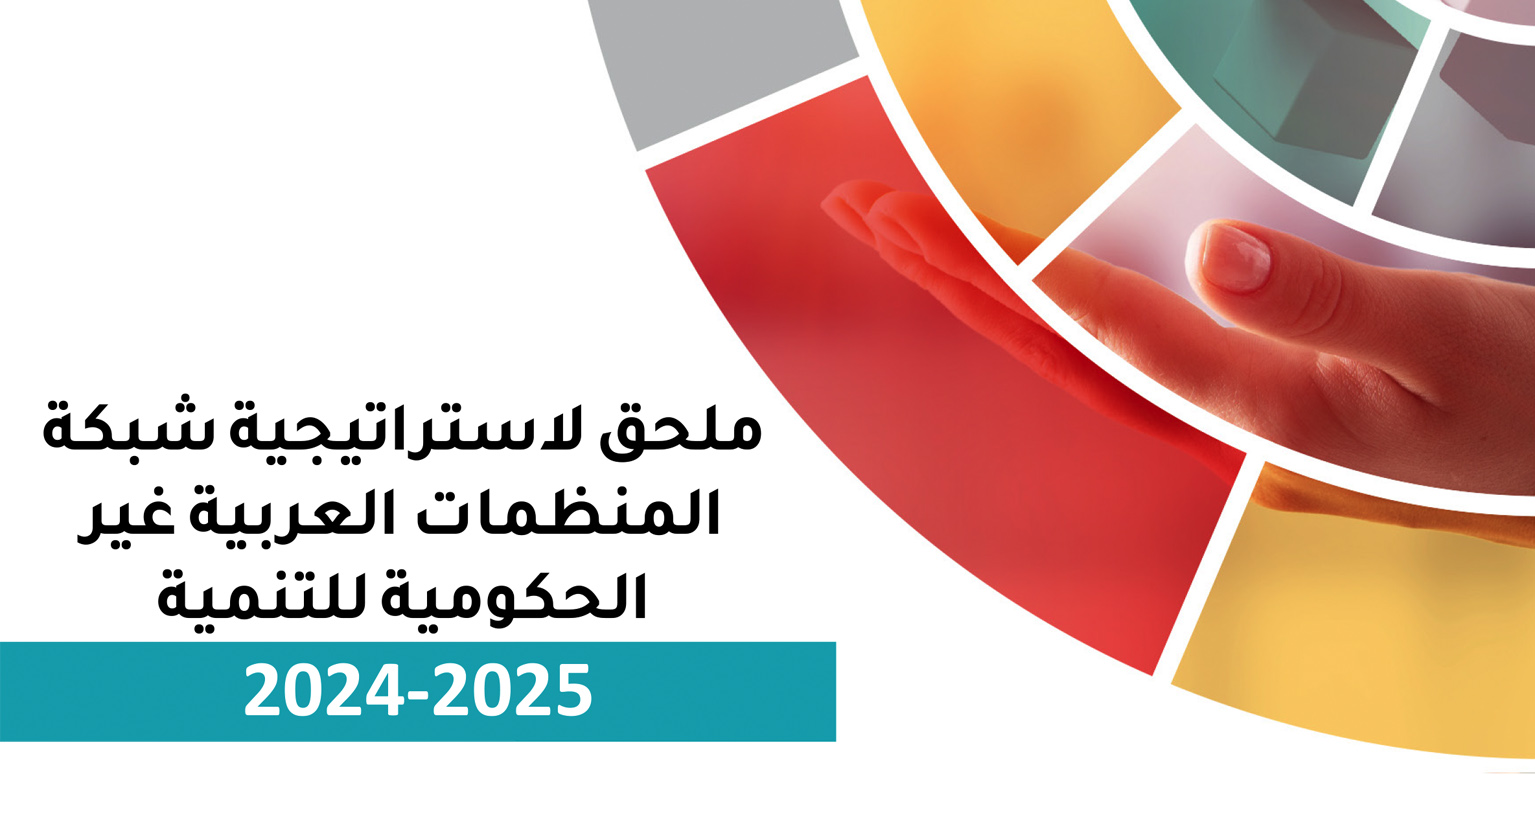 ملحق لاستراتيجية شبكة المنظمات العربية غير الحكومية للتنمية 2024-2025